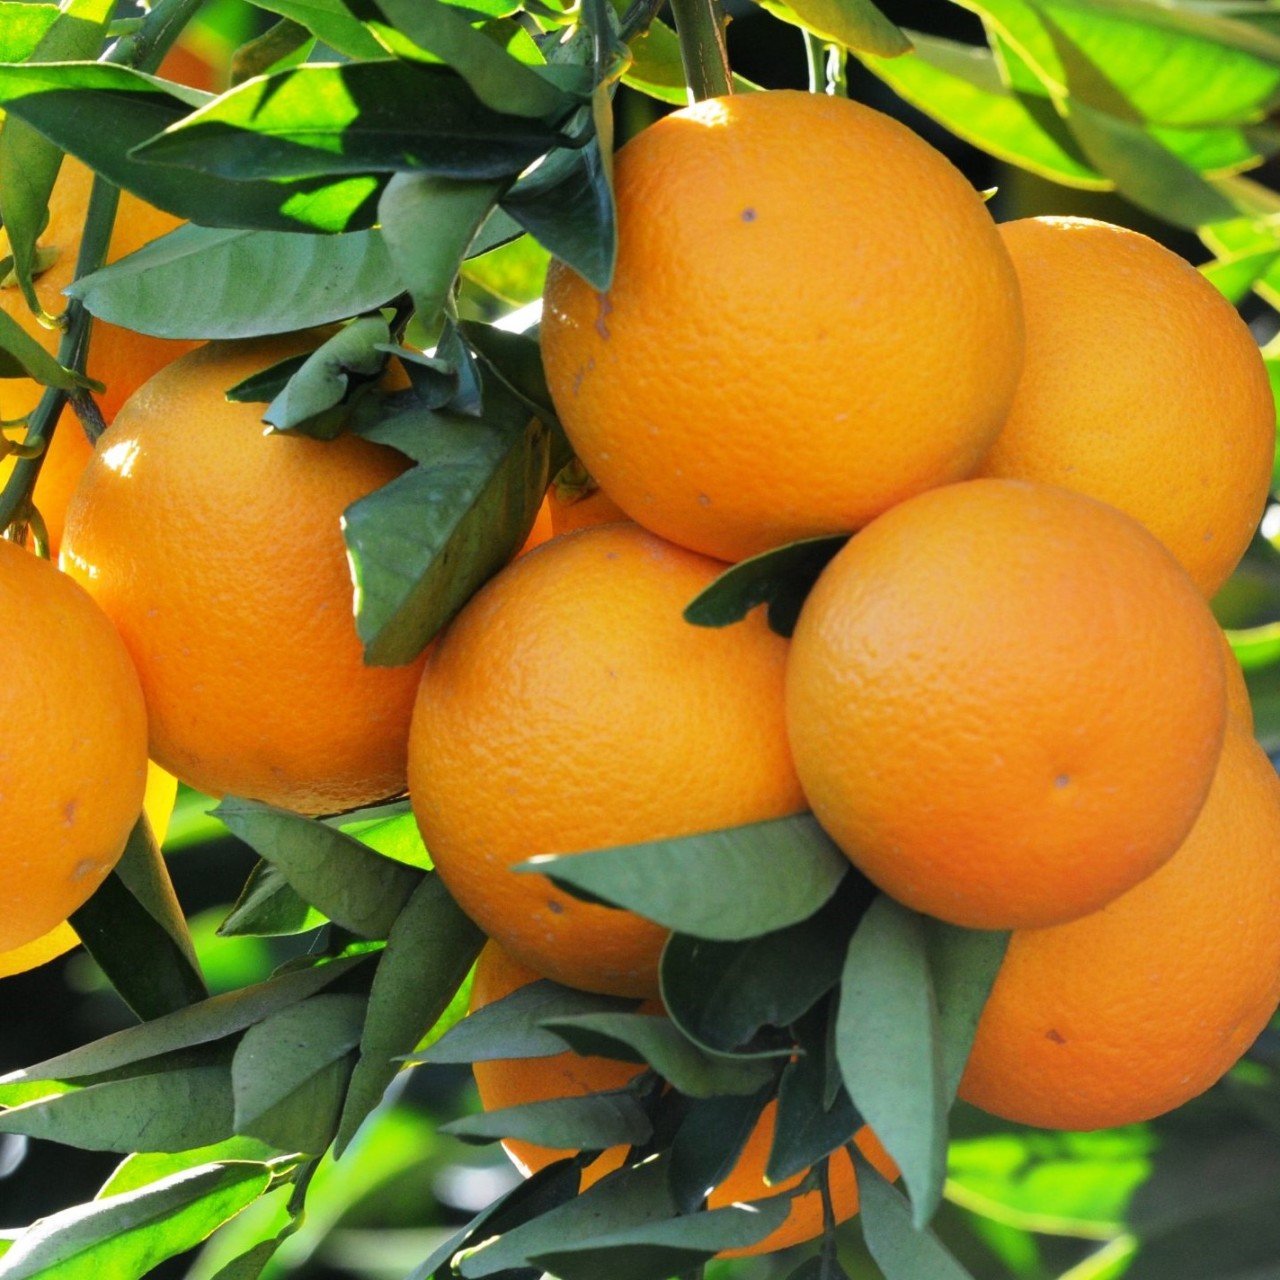 Tüplü Aşılı Meyve Verme Yaşında Rize Portakalı Fidanı